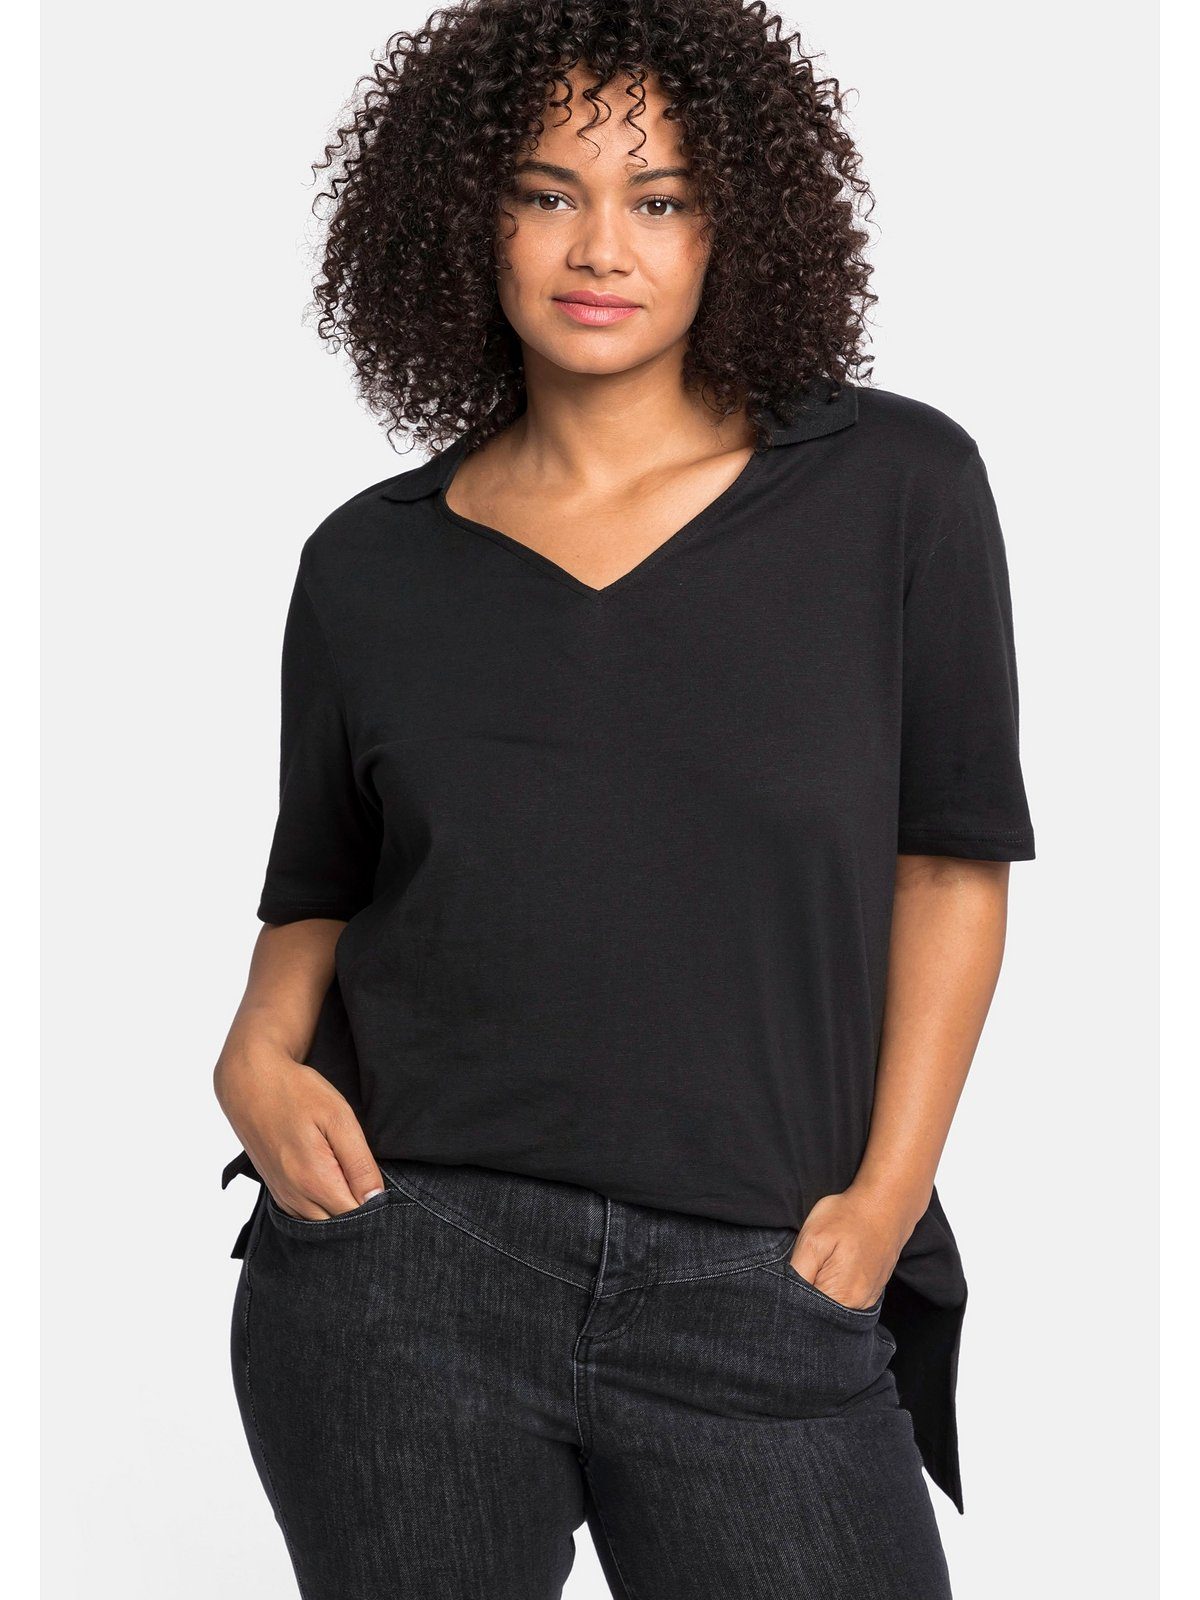 Sheego T-Shirt Große Größen mit und Polokragen schwarz asymmetrischem Saum